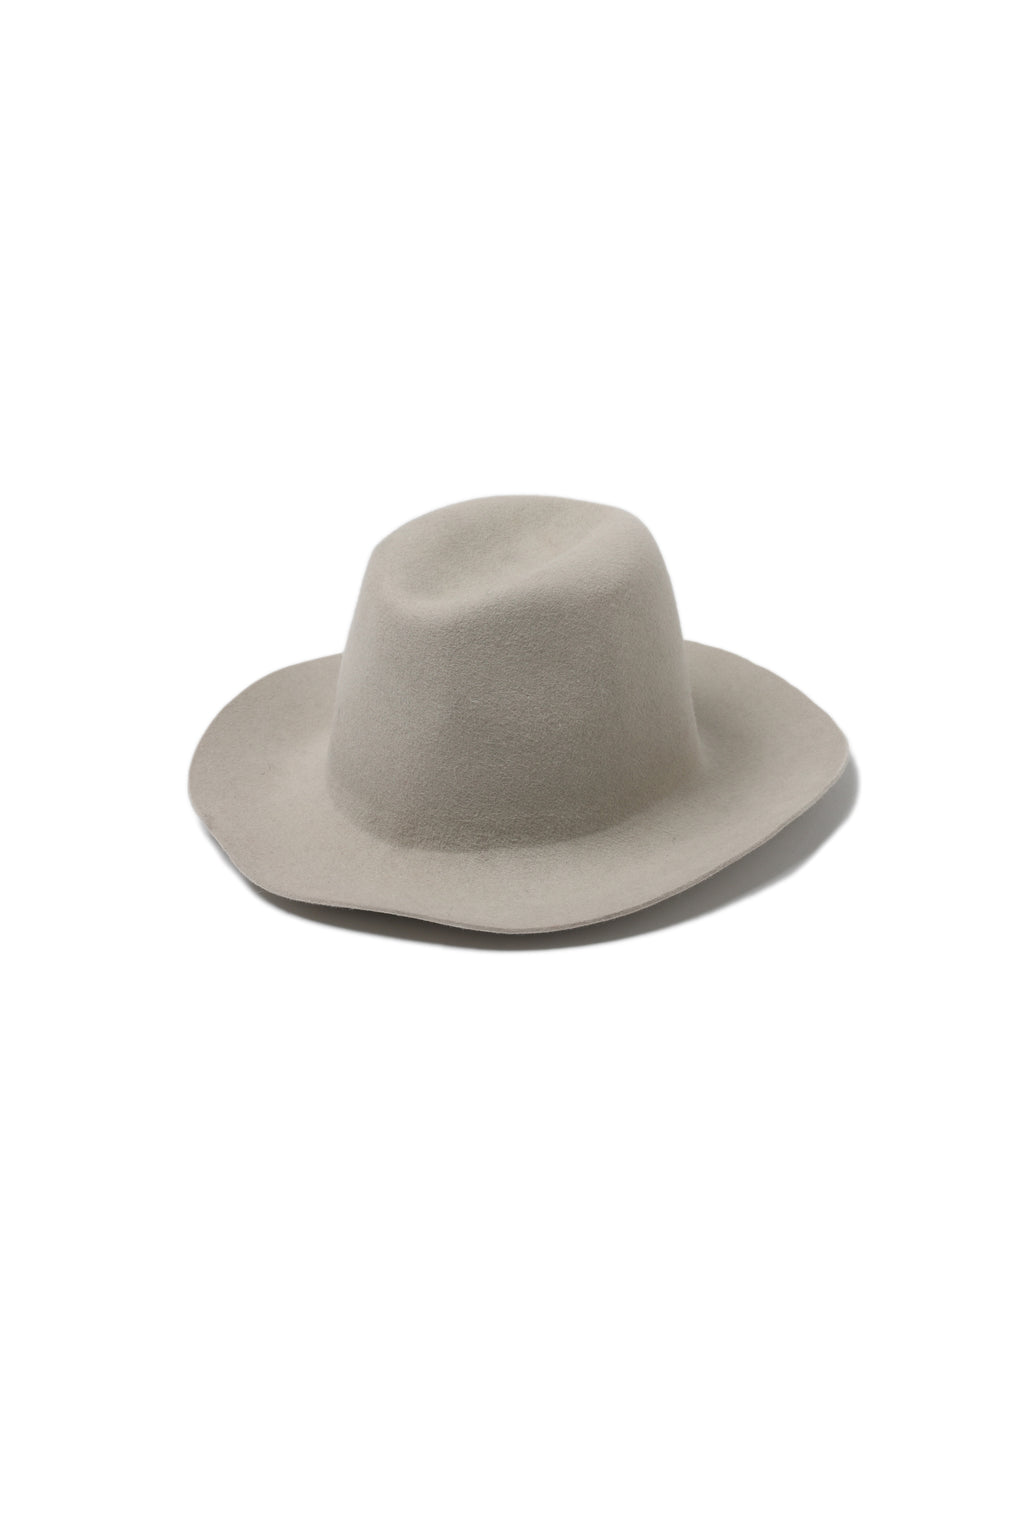 REINHARD PLANK 帽子 - 白色